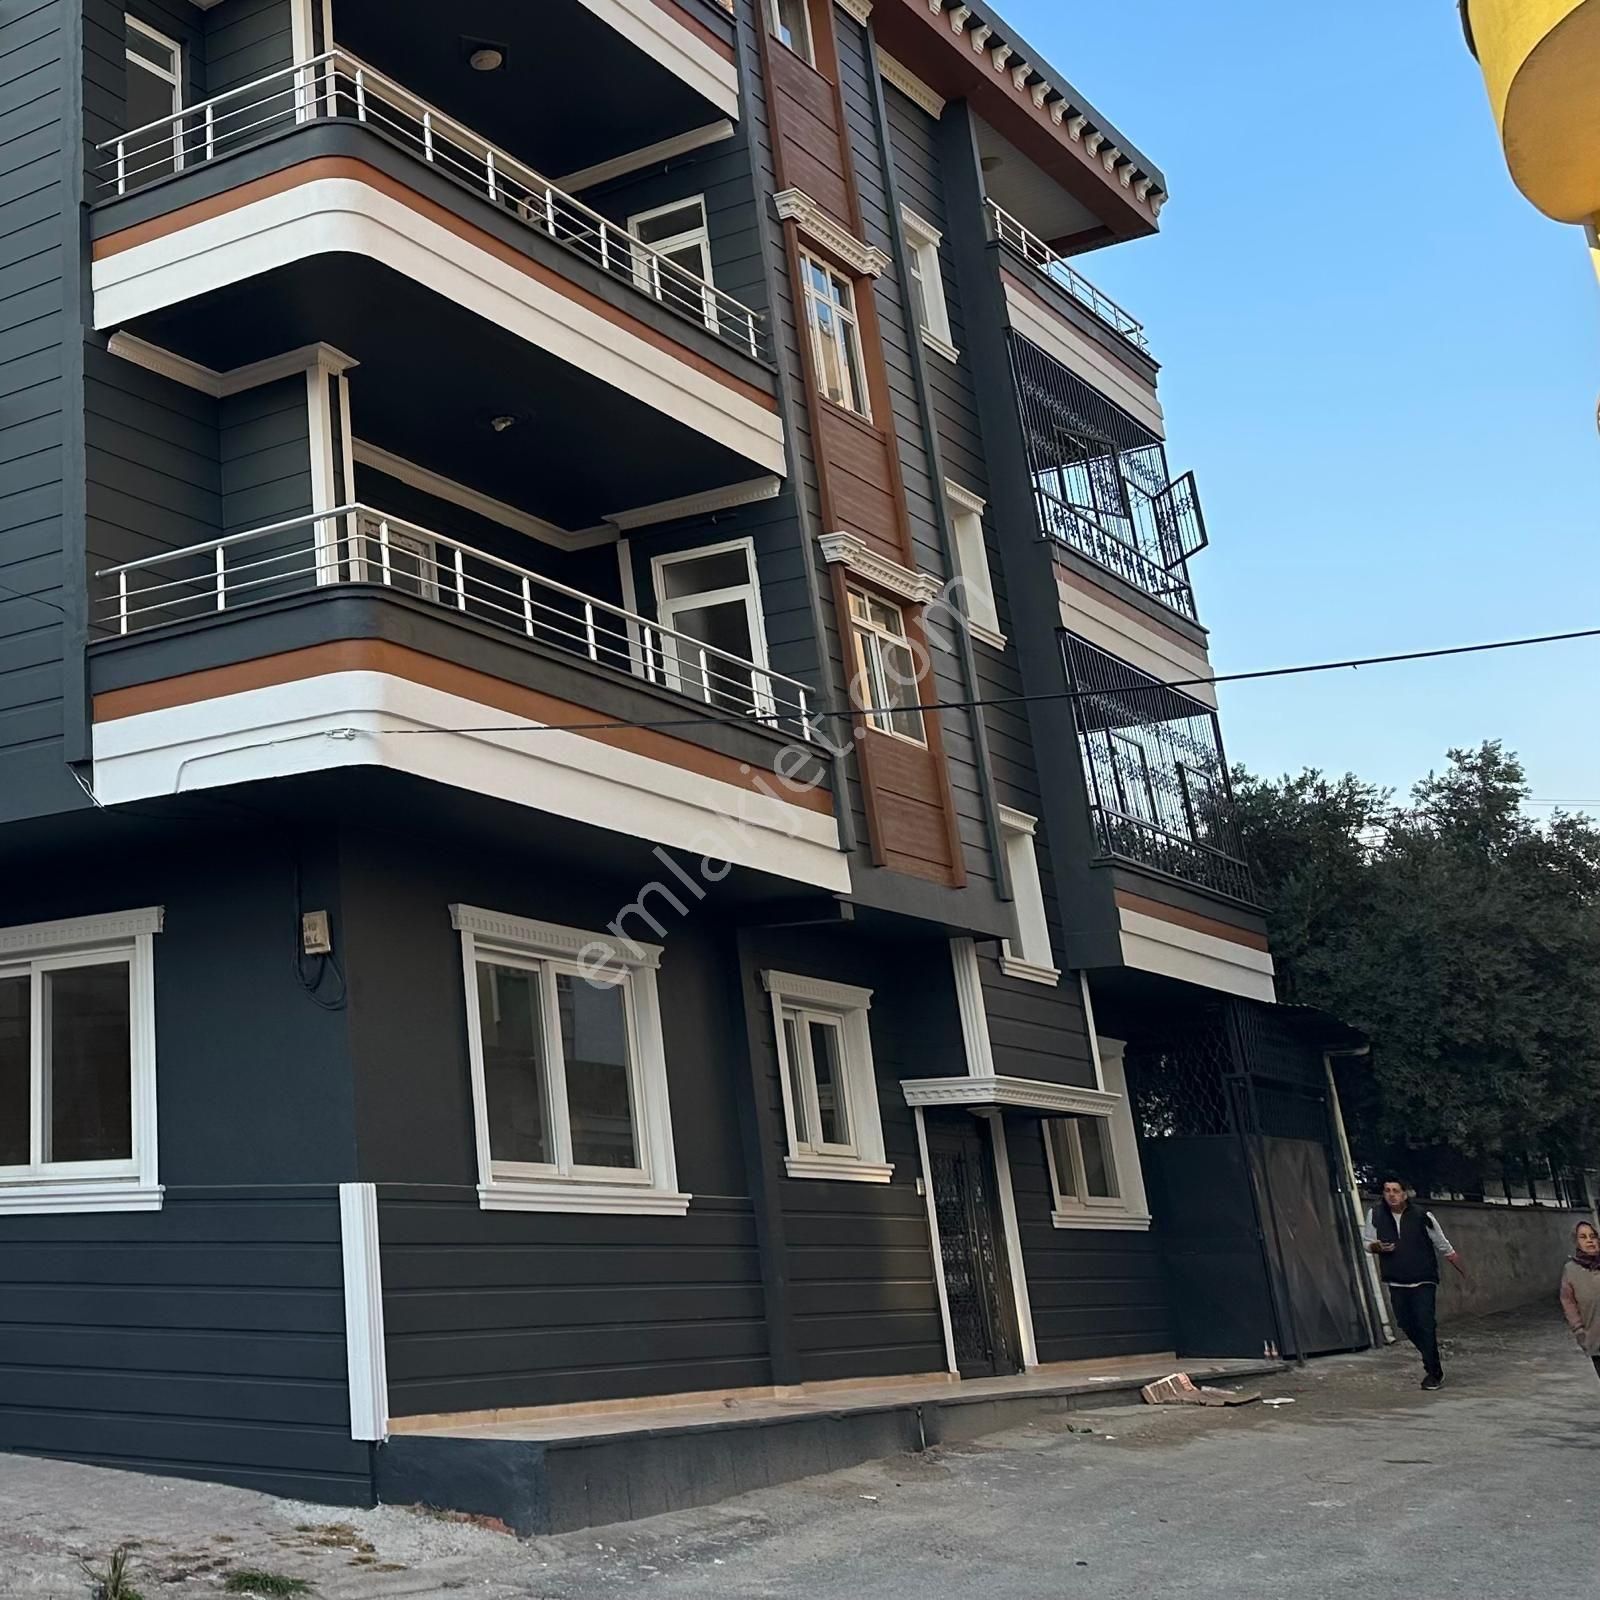 Yenişehir Batıkent Satılık Daire Yenişehir Batıkent Şahin tepesi'nde satılık komple bina daireler 3+1 geniş ferah